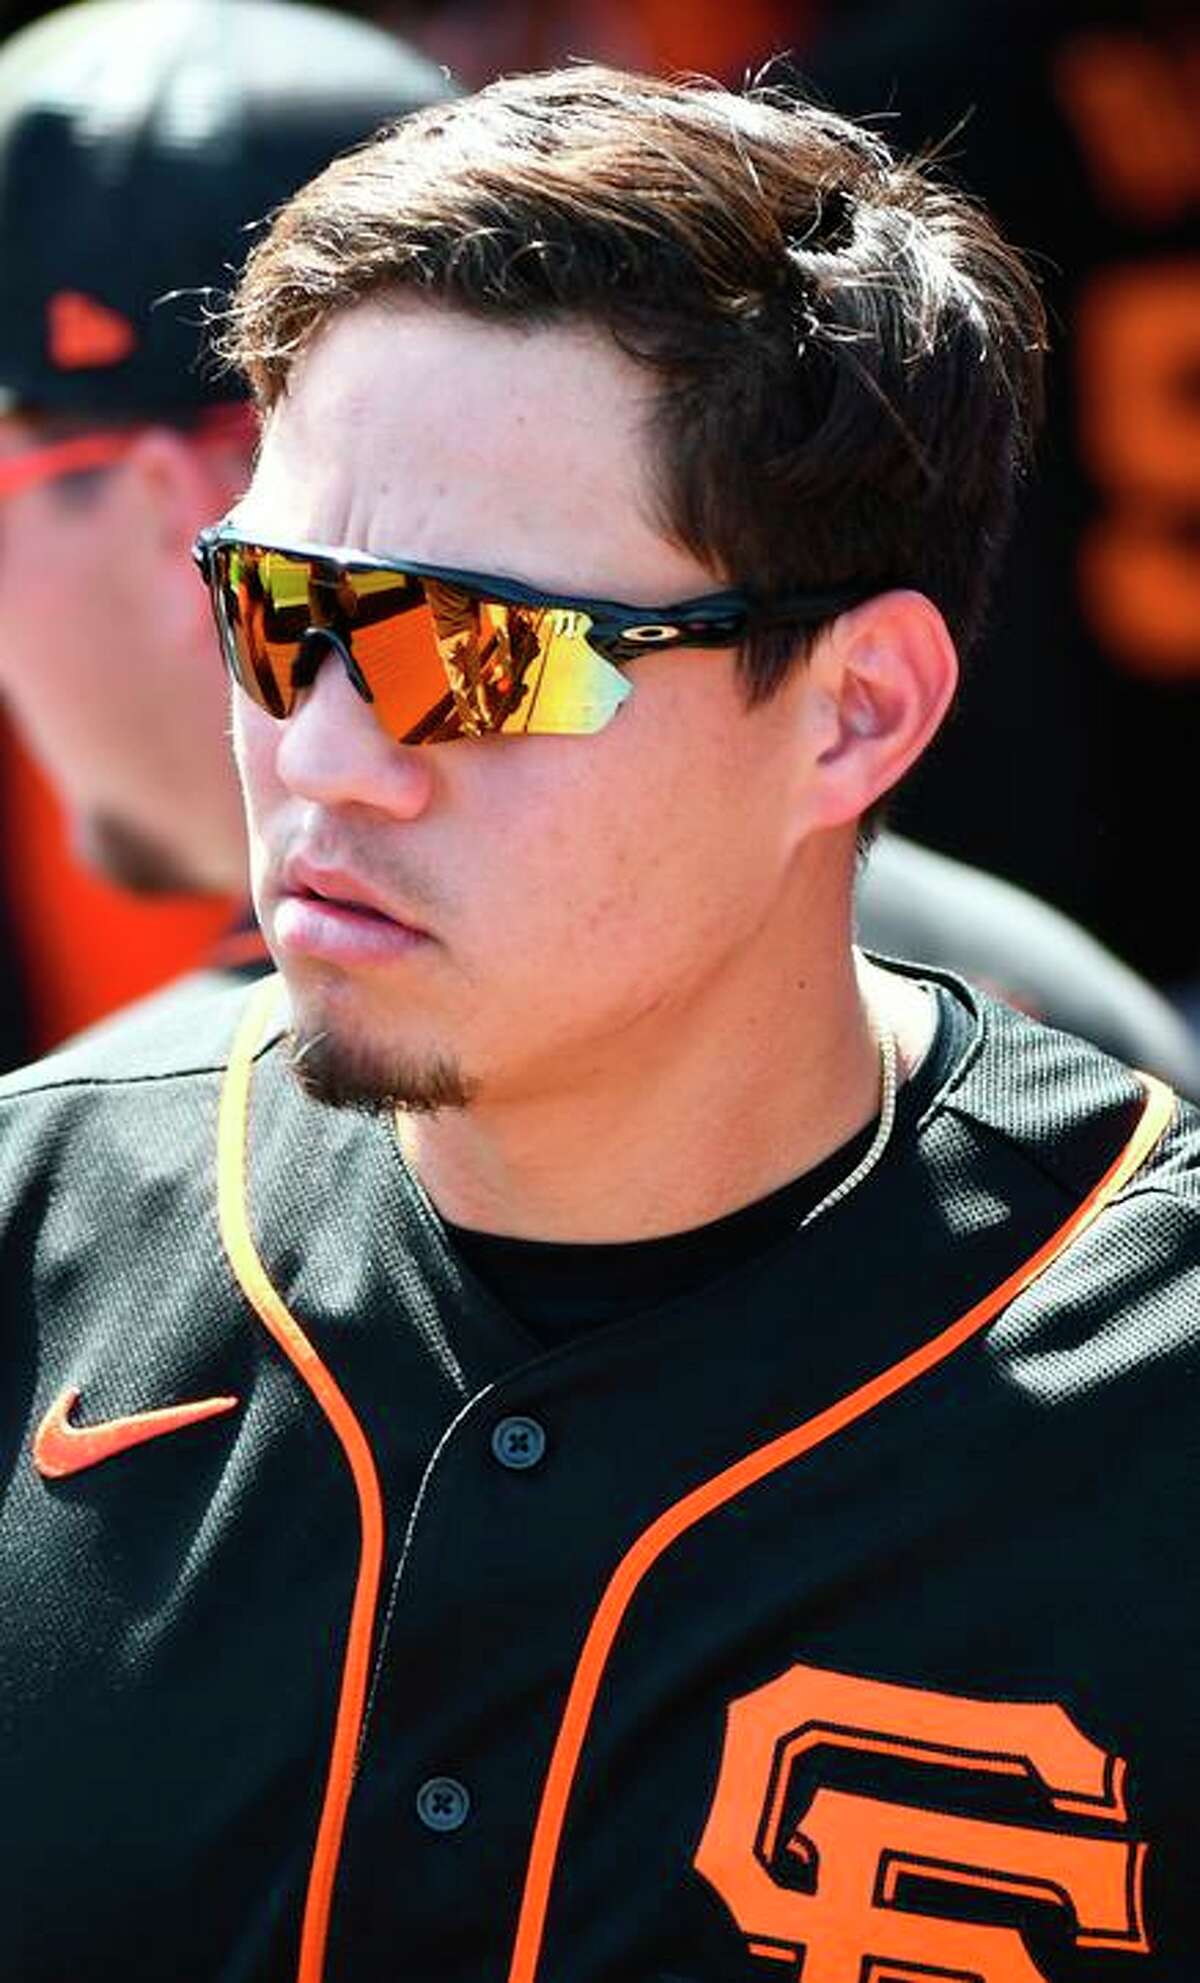 Wilmer Flores San Francisco Baseball WHT